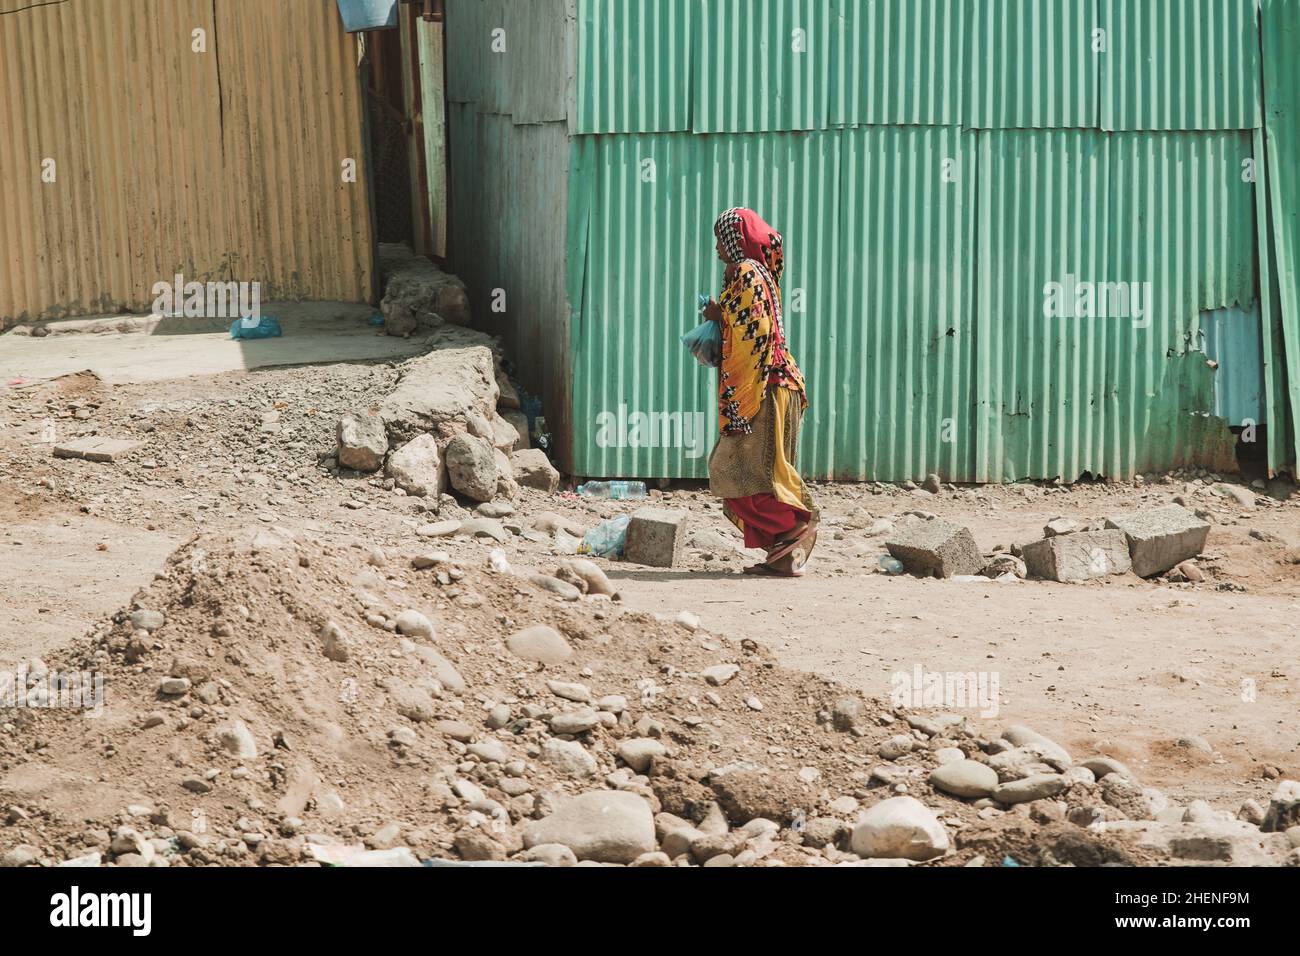 Djibouti, Djibouti - May 21, 2021: A Djiboutian woman walking in local dress in Djibouti. Editorial shot in Djibouti Stock Photo